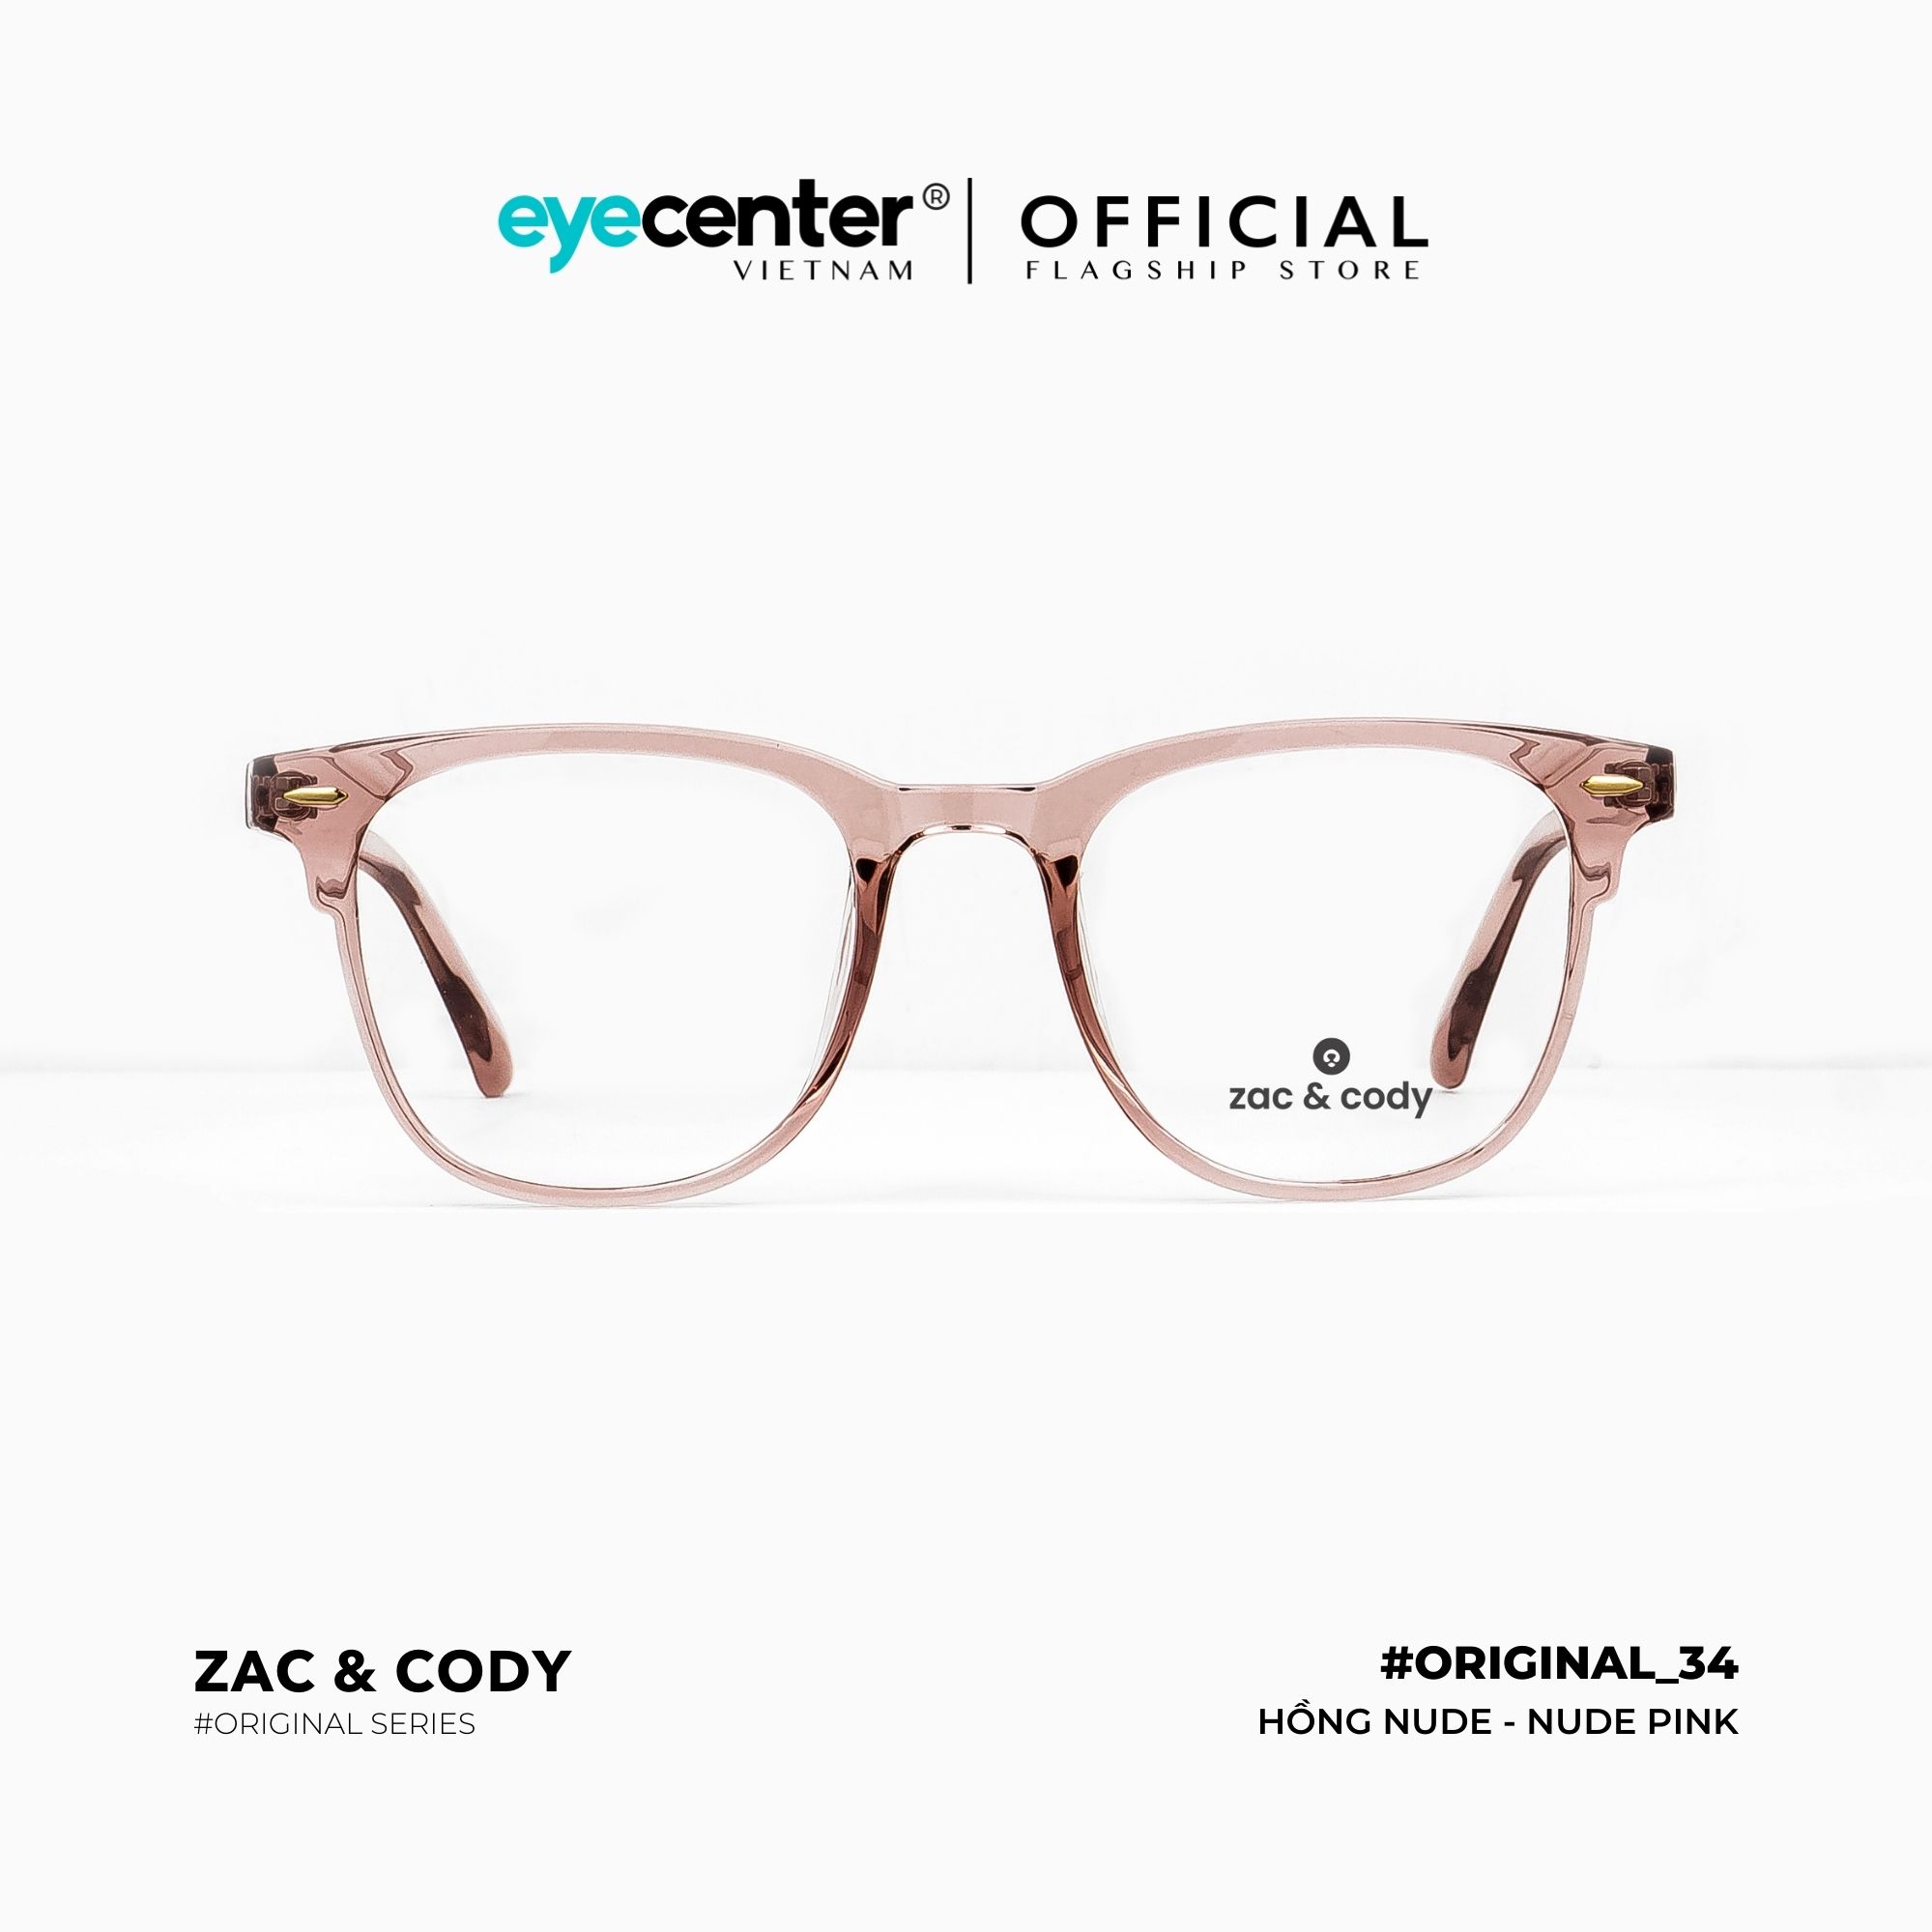 Gọng kính cận nam nữ chính hãng B34-S by ZAC CODY B34 nhựa dẻo chống gãy nhập khẩu by Eye Center Vietnam